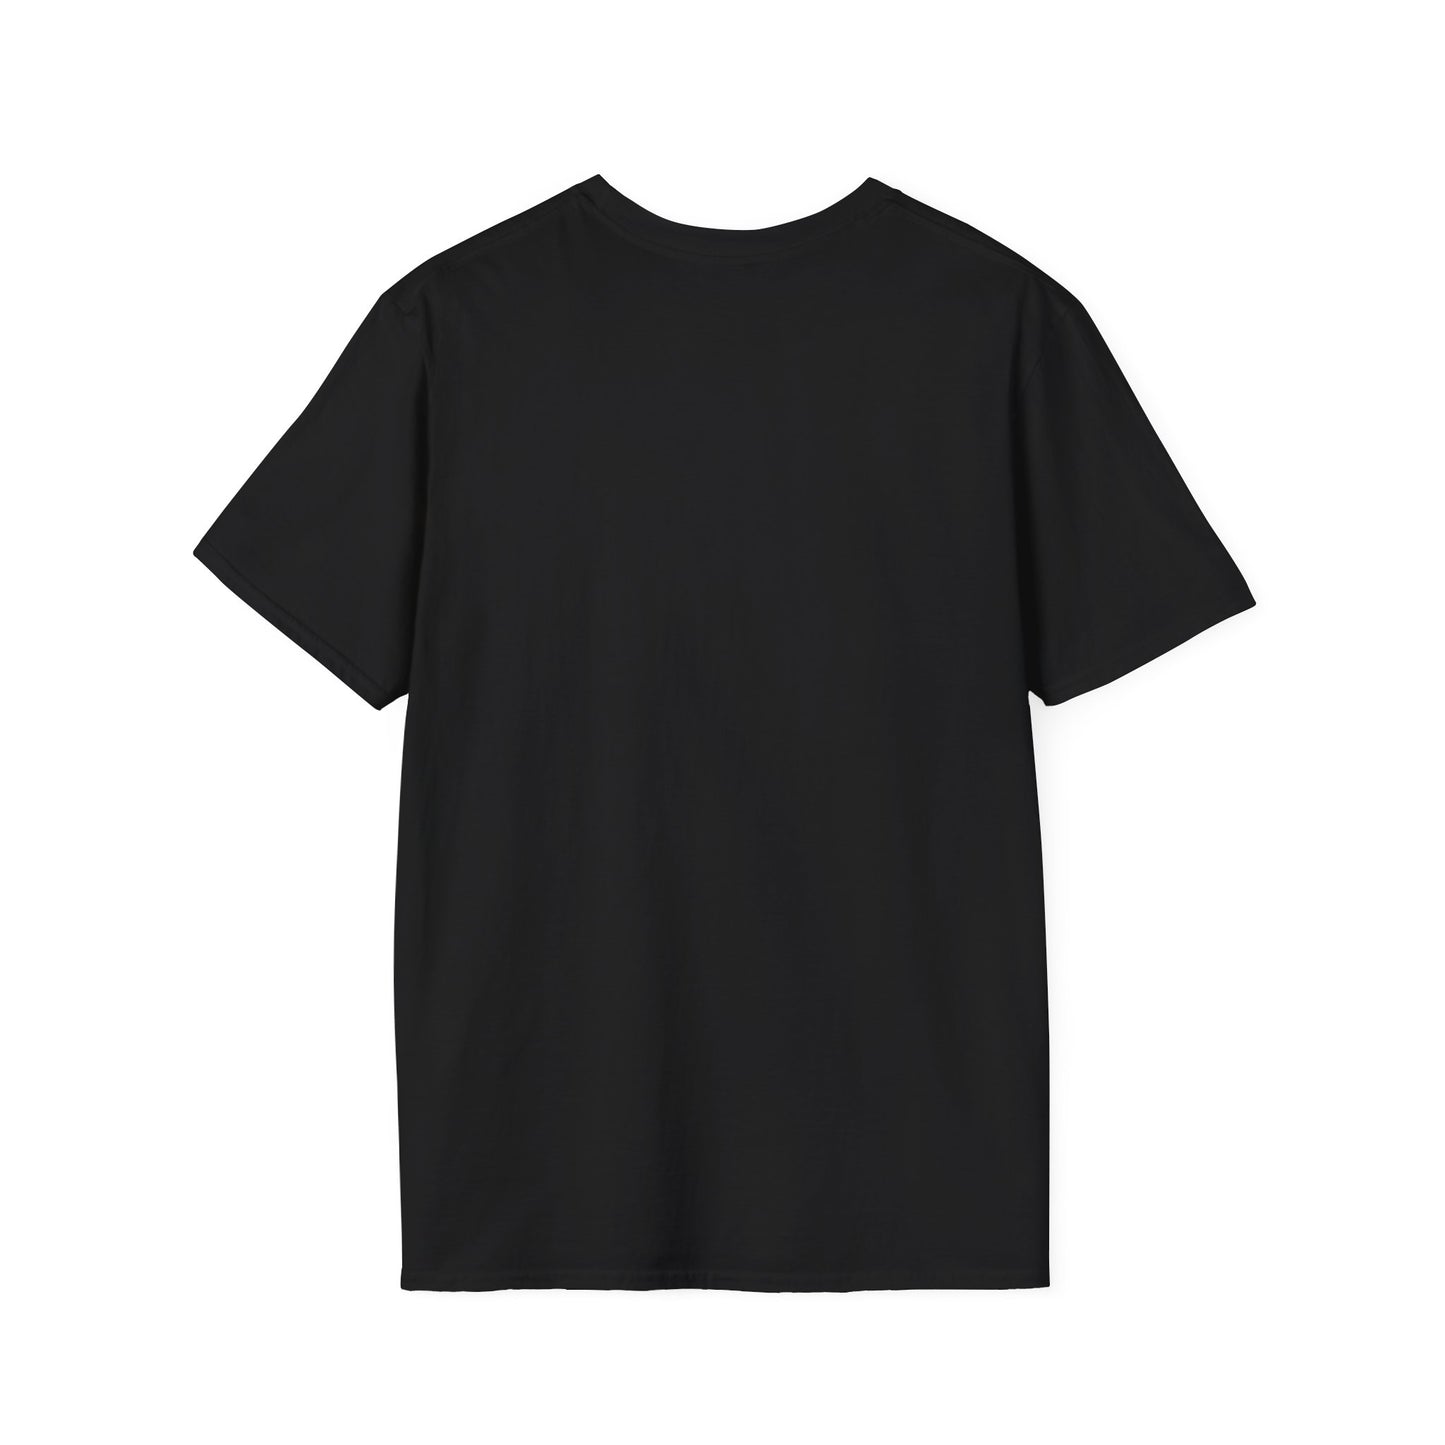 TG-14 Unisex Softstyle T-Shirt